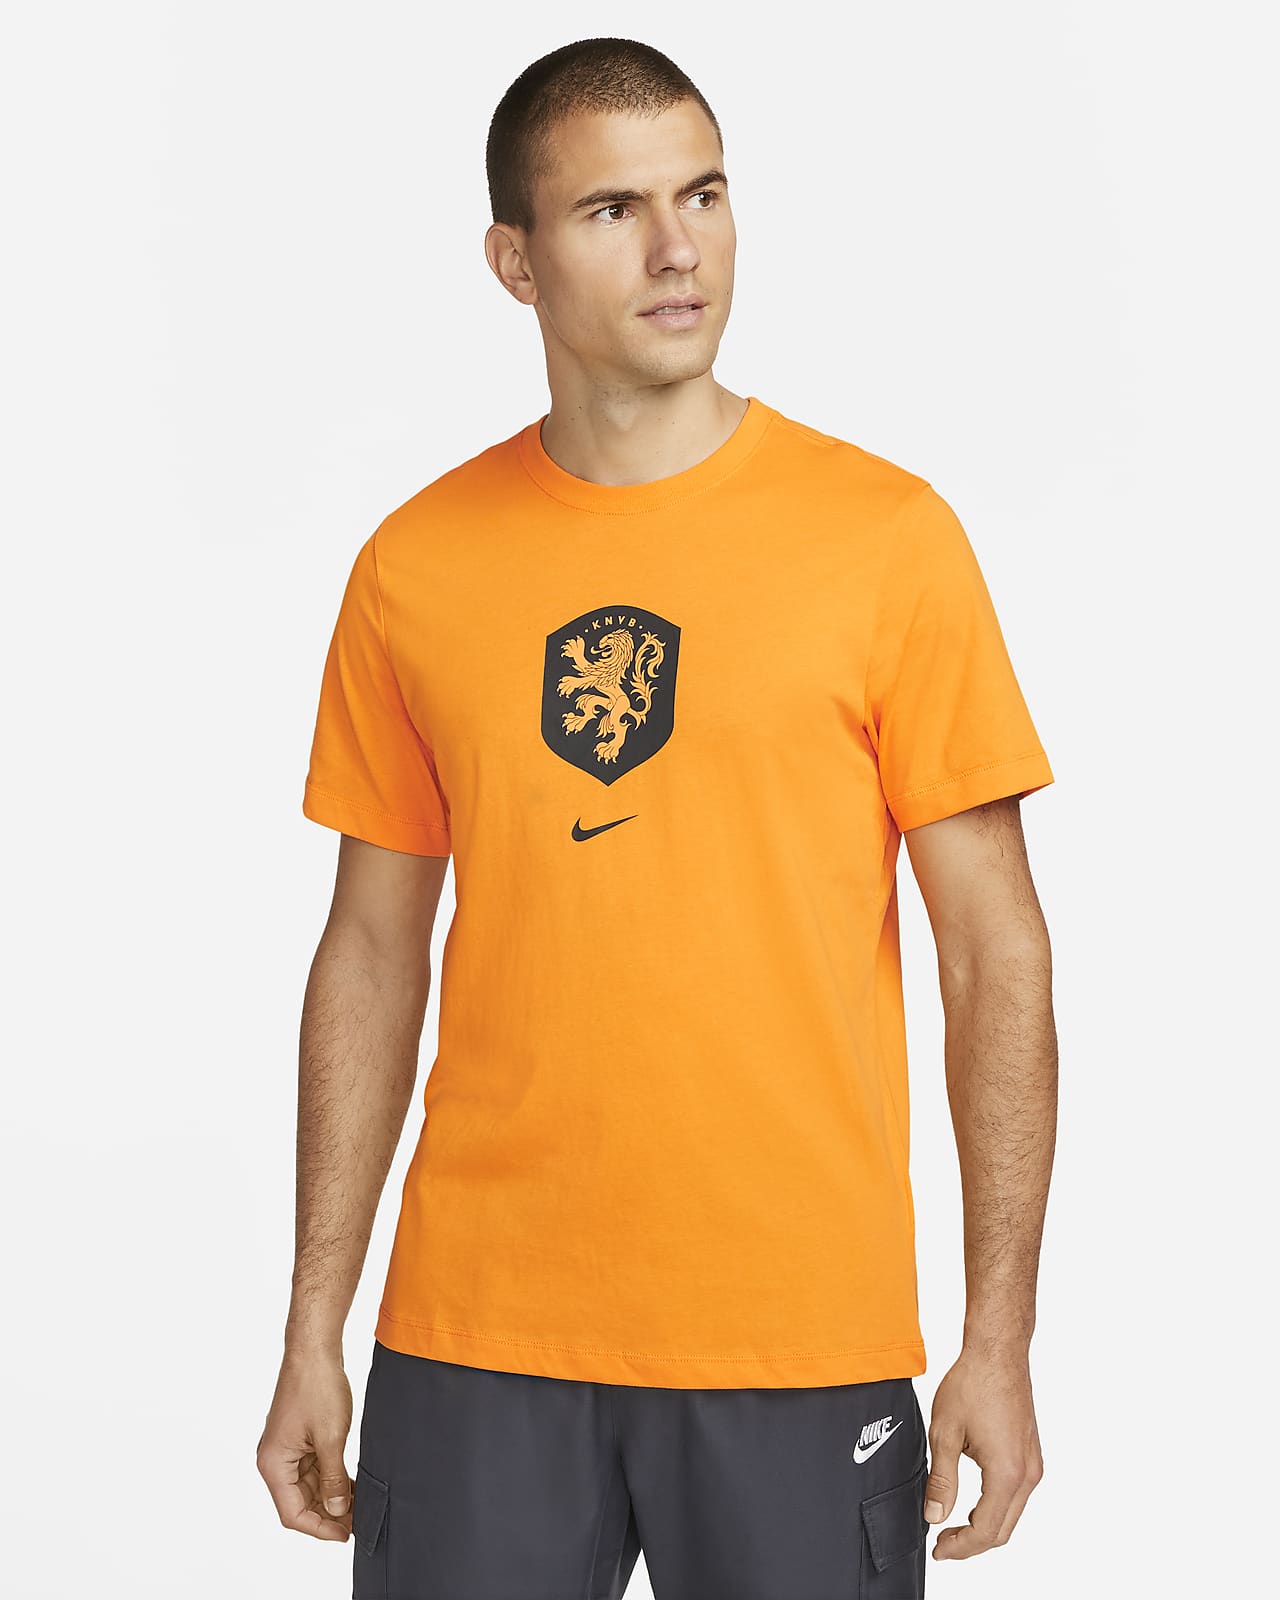 Holland Nike-T-shirt til mænd. Nike